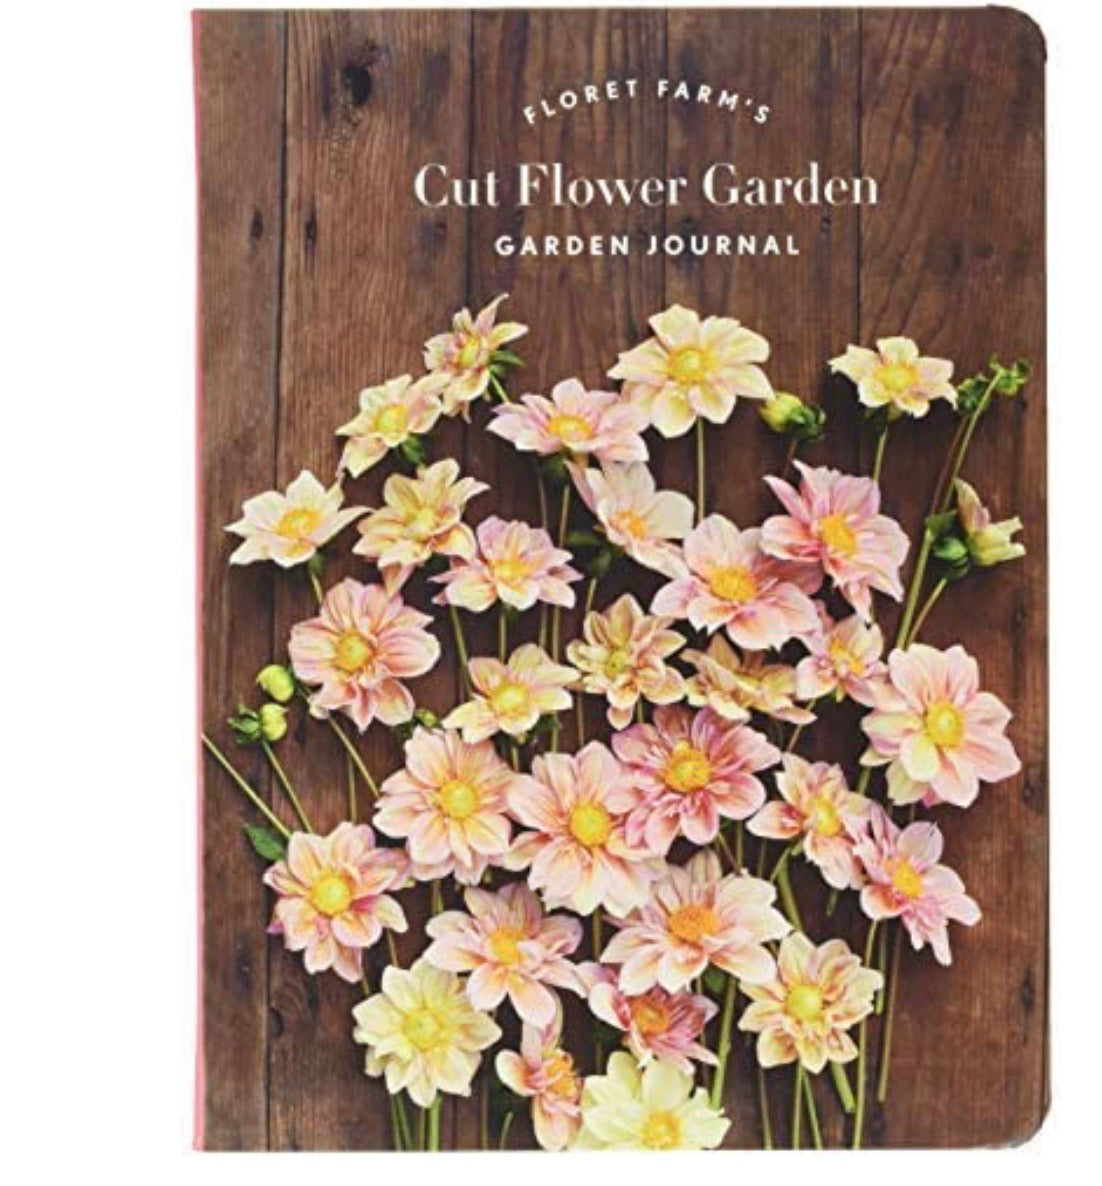 Floret Farm's Cut Flower Garden Journal